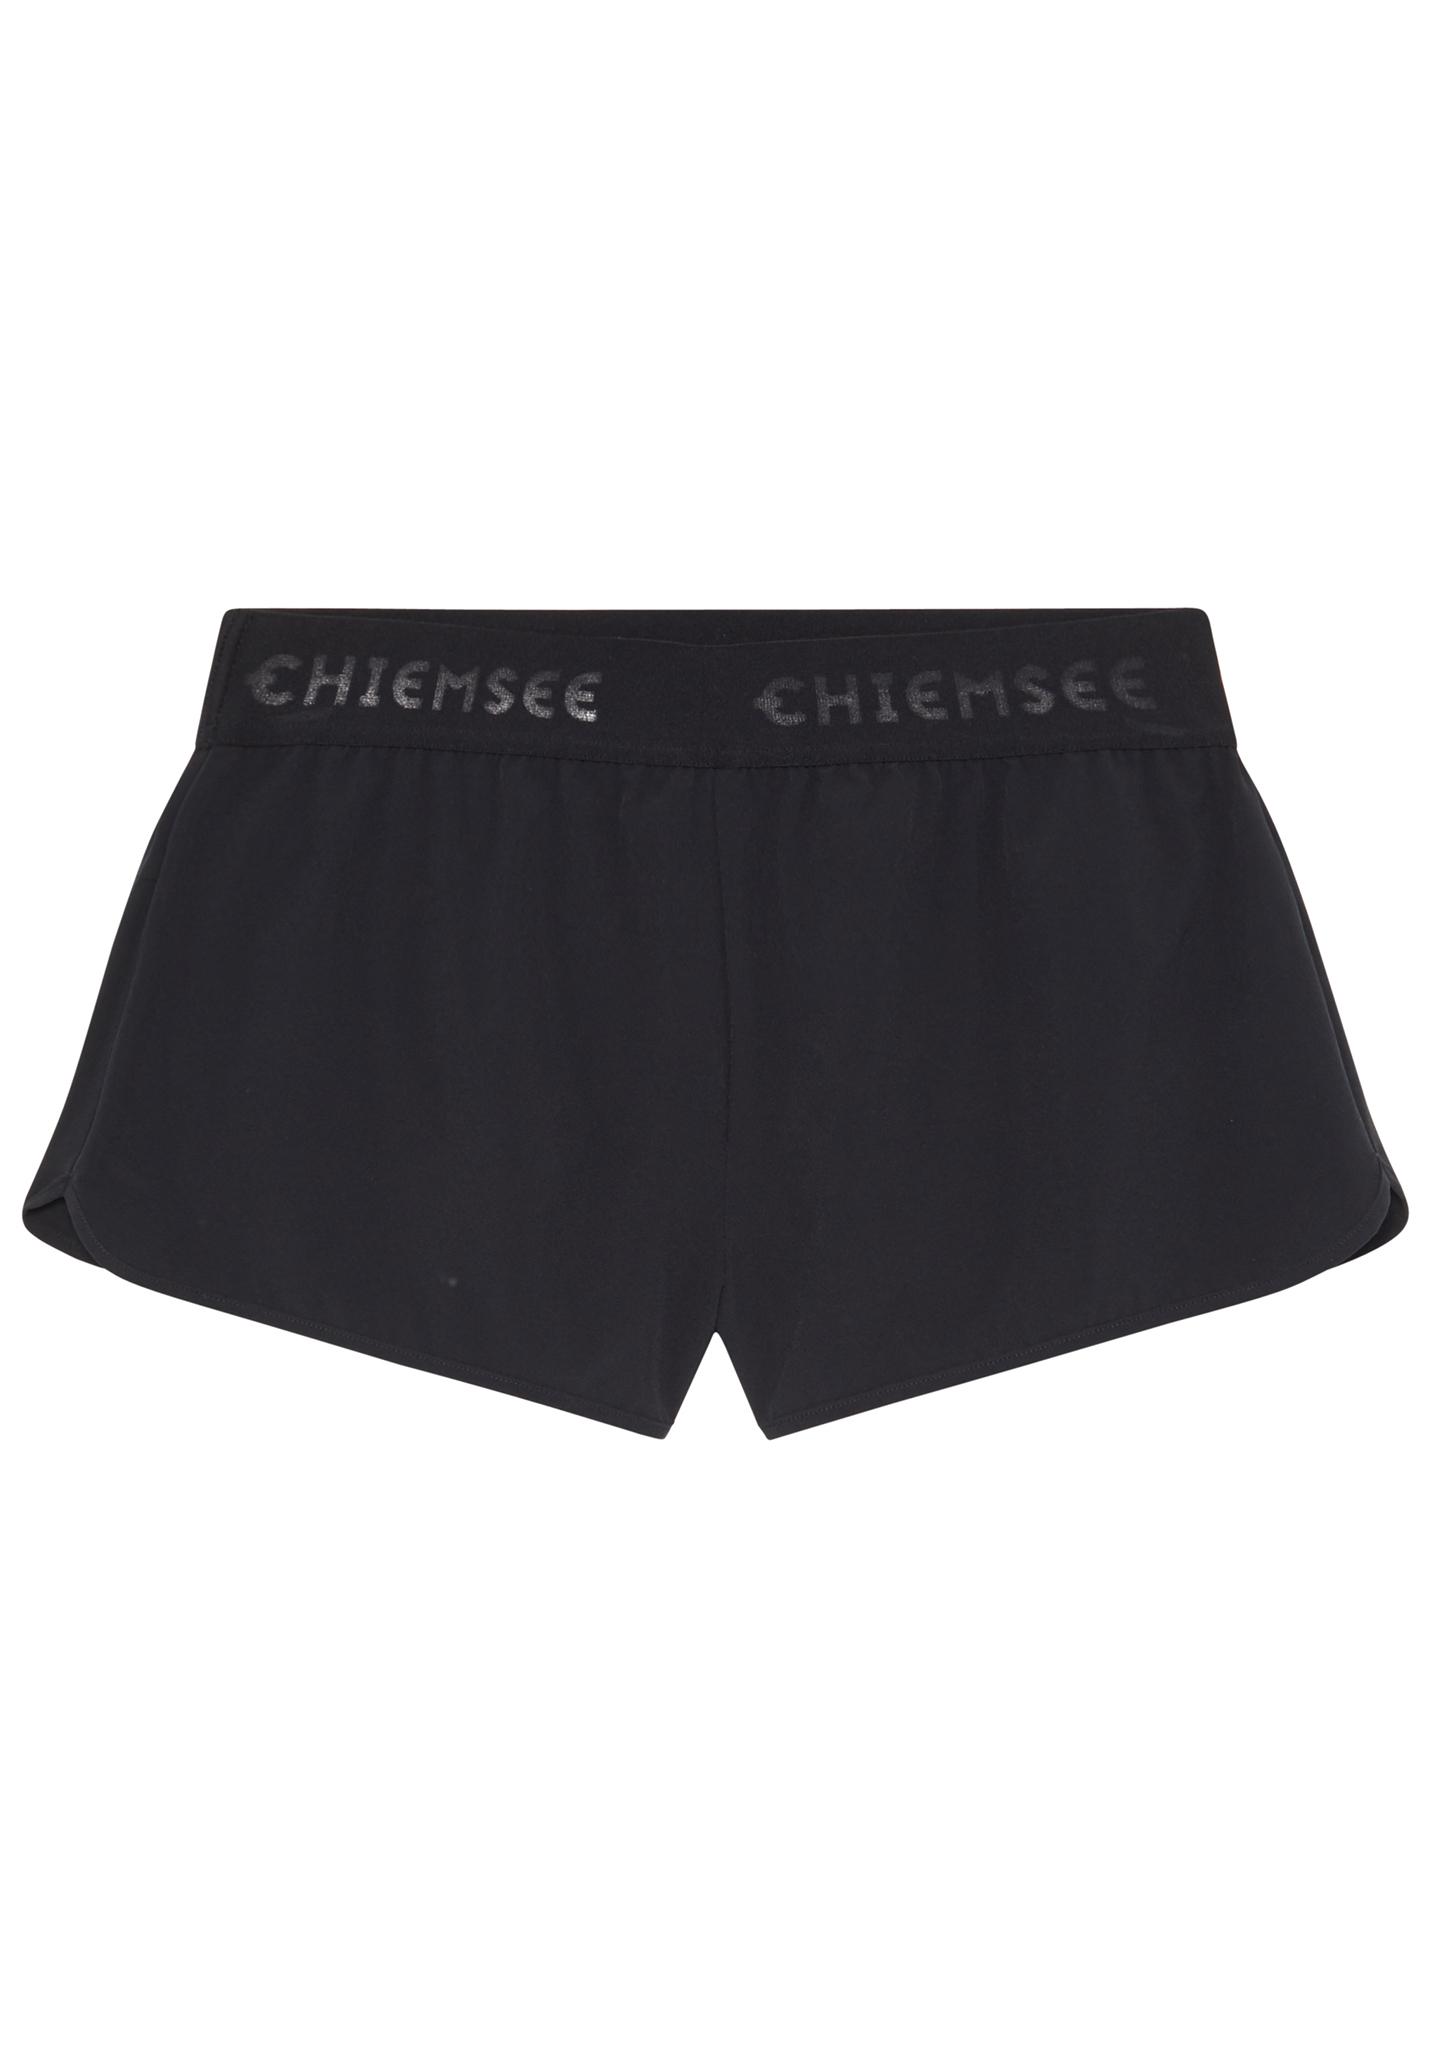 Chiemsee Badeshorts Boardshorts deep black XL